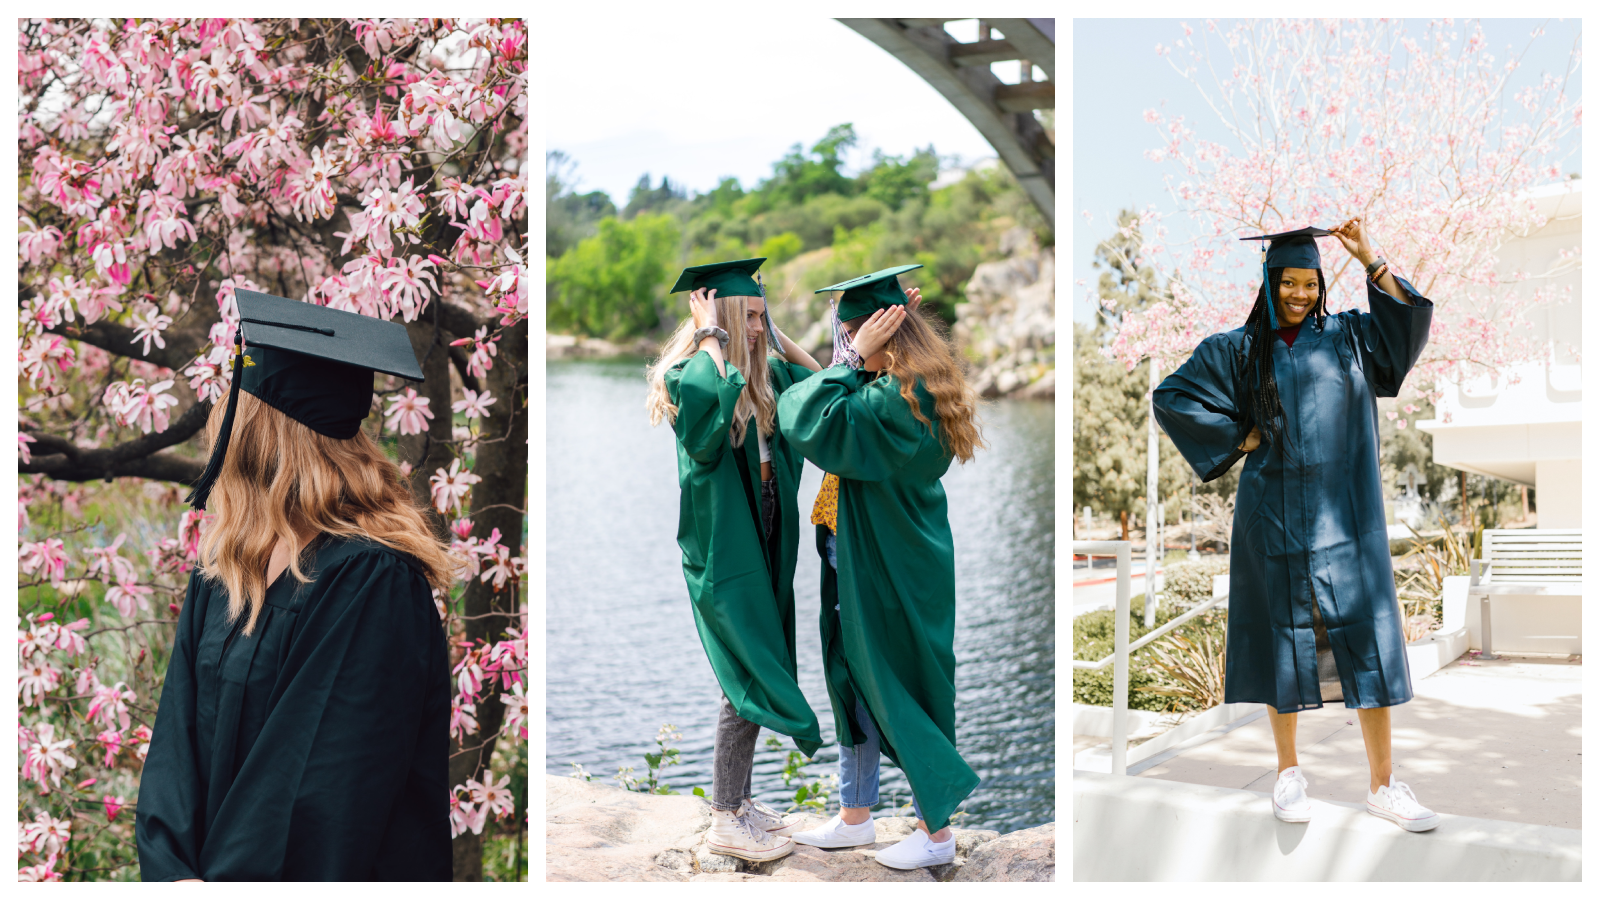 30 Best Friend Graduation Picture ideas – Buzz16 | Graduation picture poses,  Graduation pictures, Graduation portraits